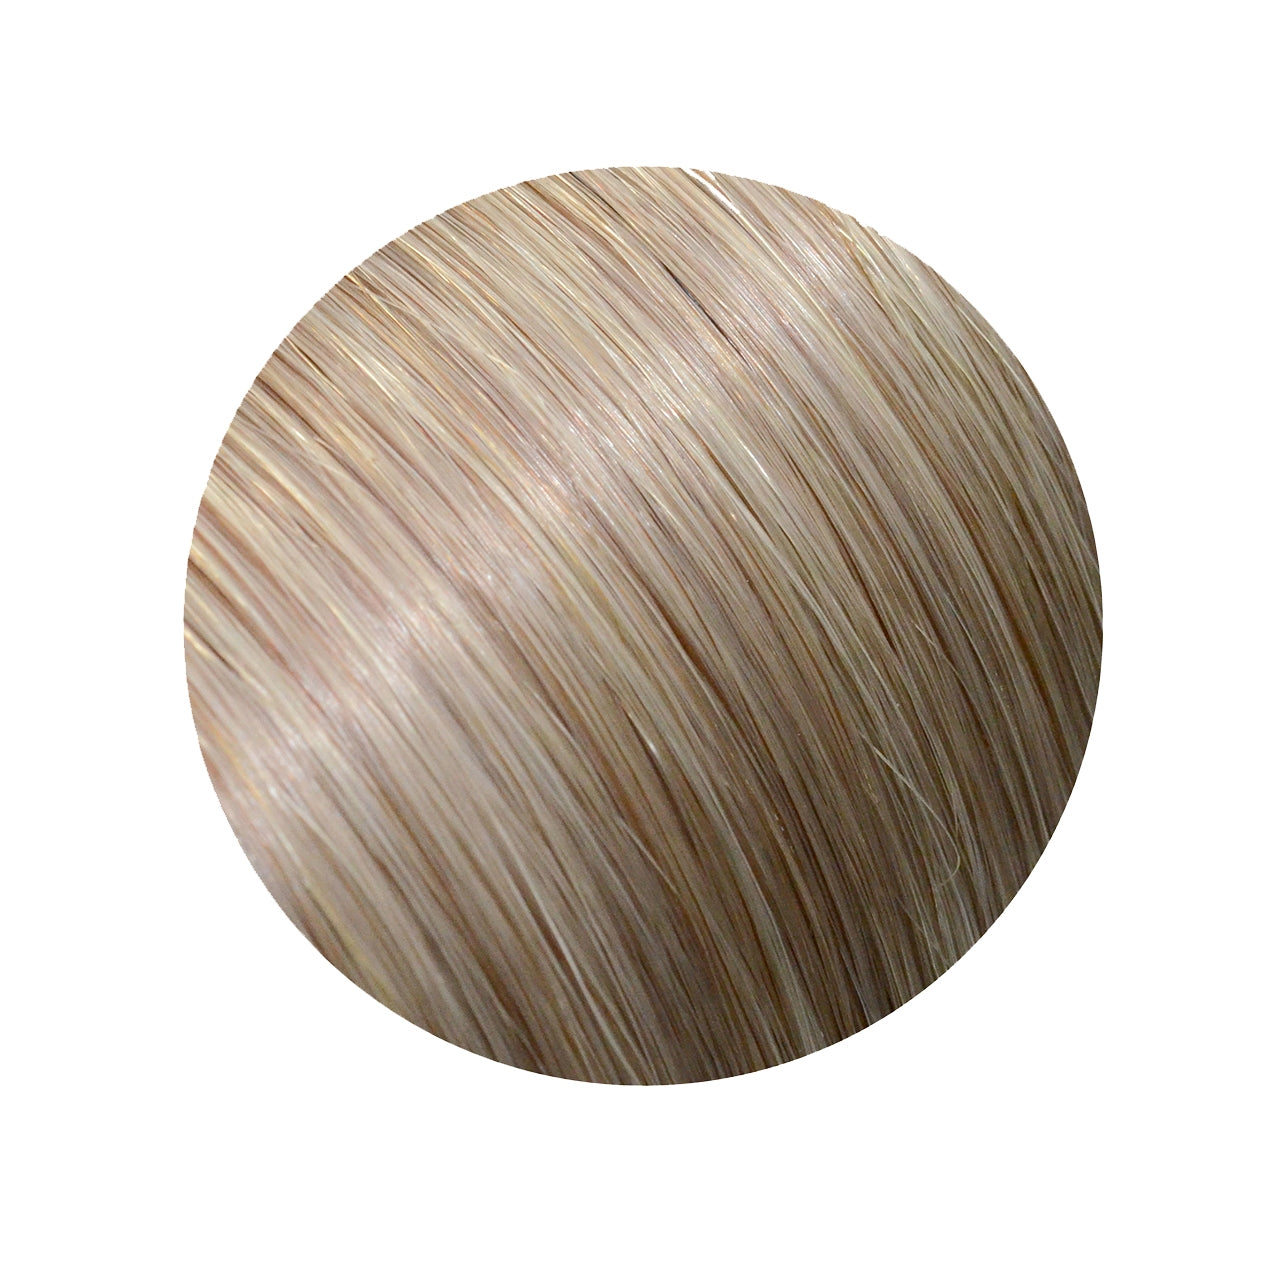 Ziploxx 72 - Wheat Blonde (Silver) 16 inch 10 Piece Pack